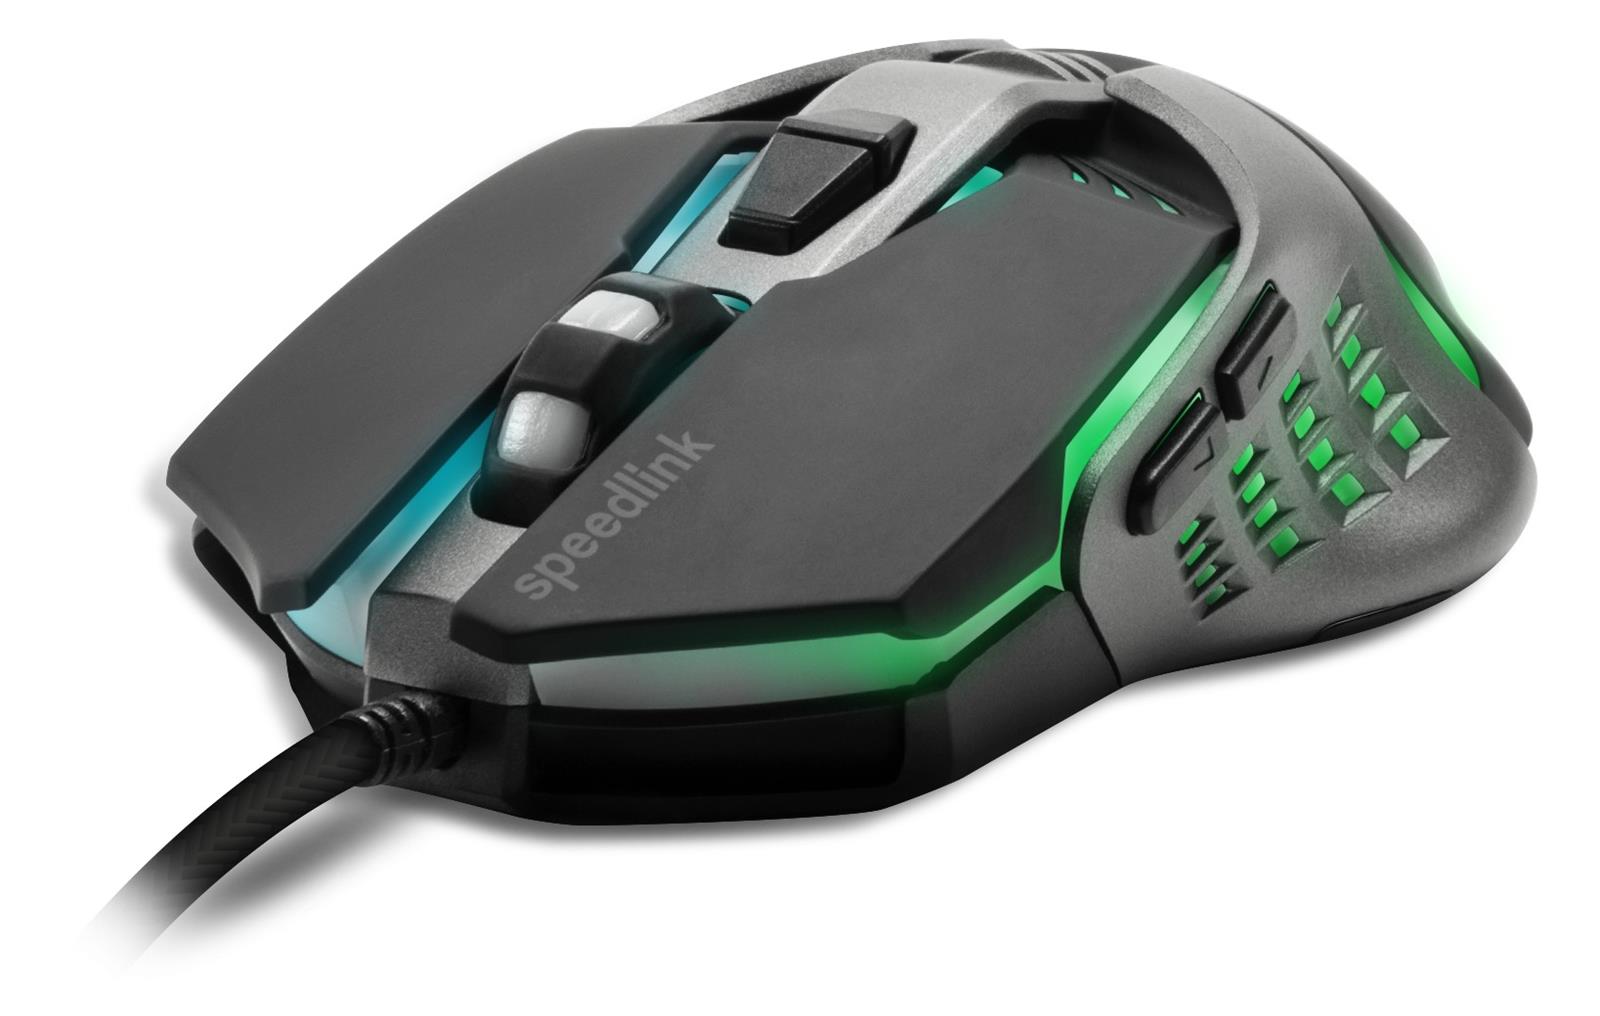 SpeedLink Tyalo Gaming Mouse / Svart